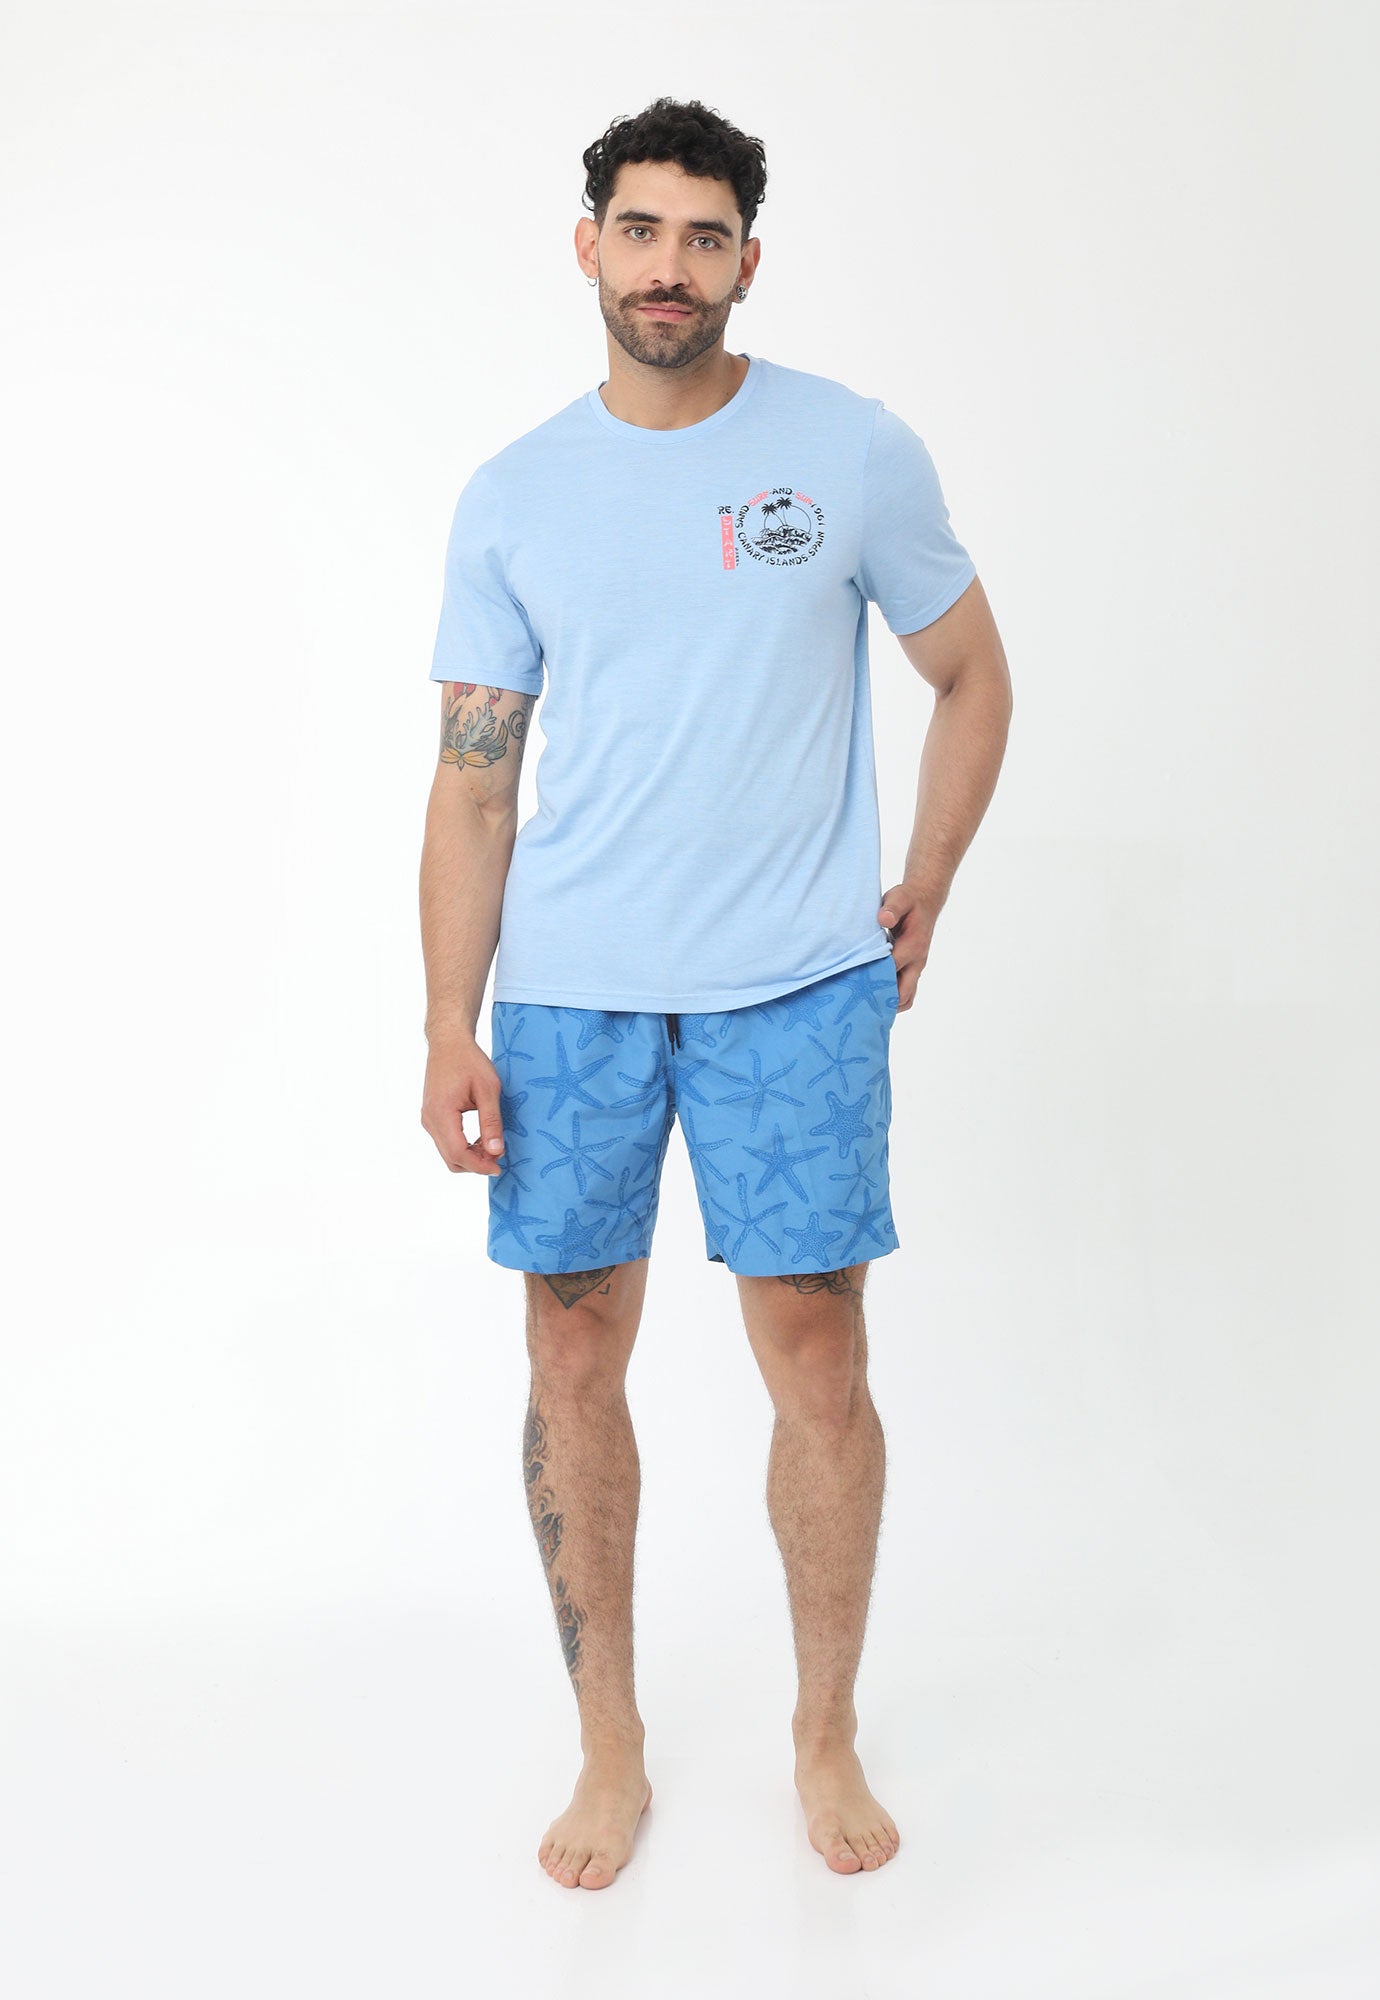 Camiseta de playa azul manga corta, cuello redondo estampado en frente y en posterior para hombre